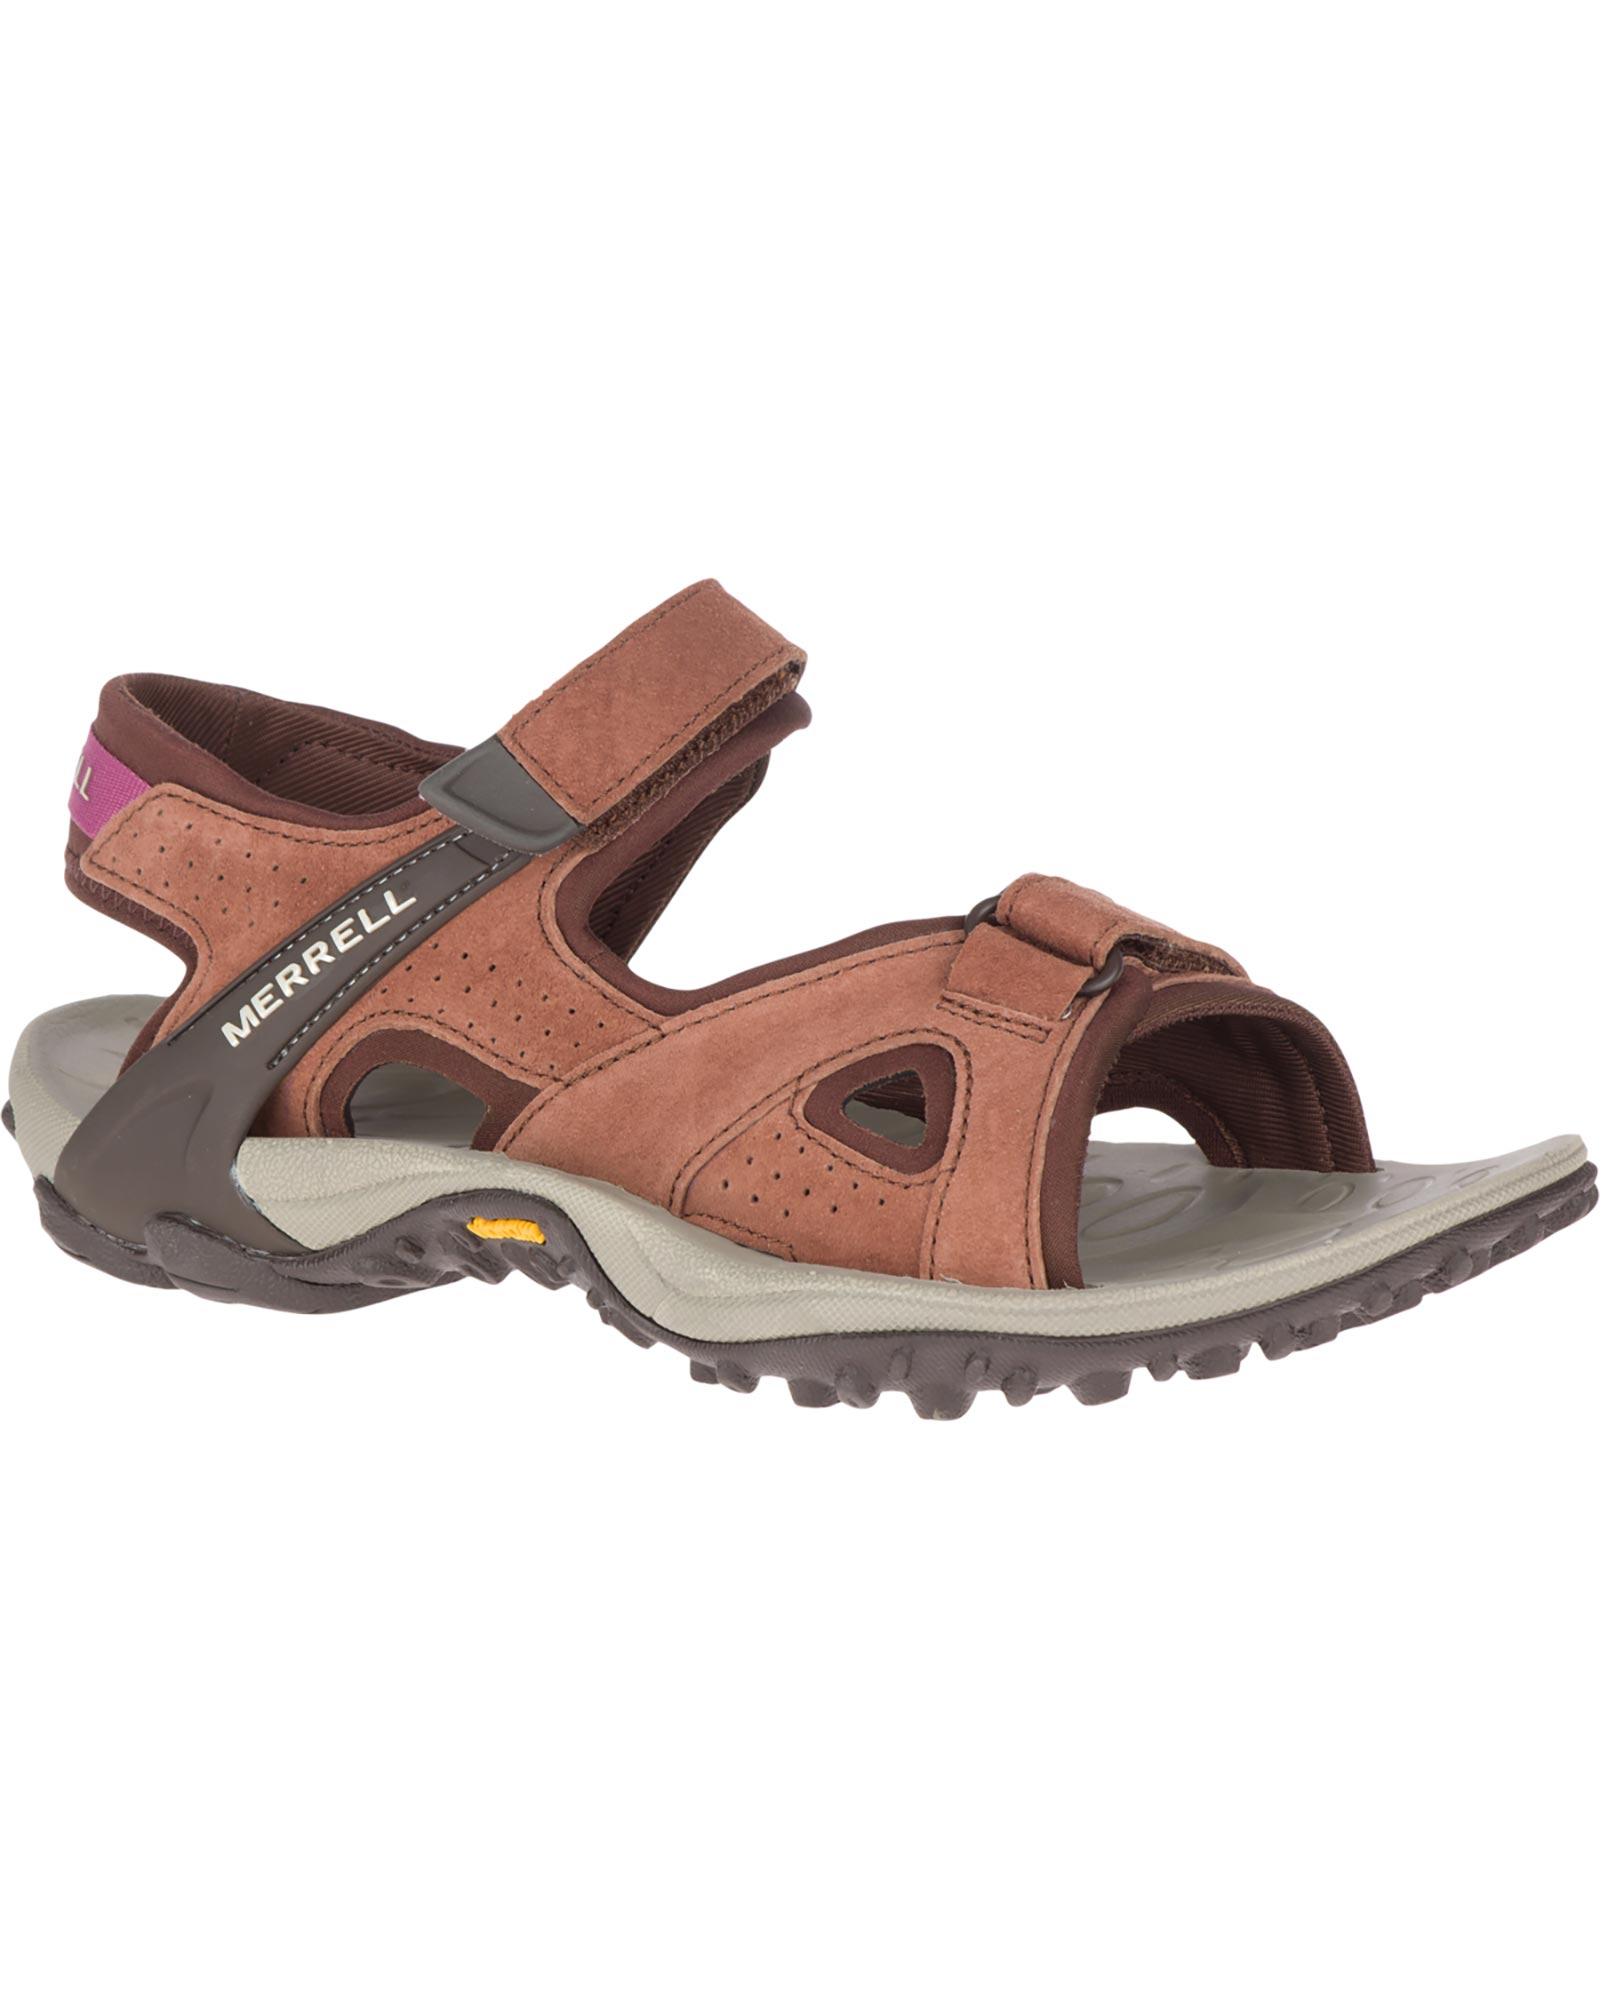 Merrell Kahuna 4 Strap Women’s Sandals - Choc UK 8